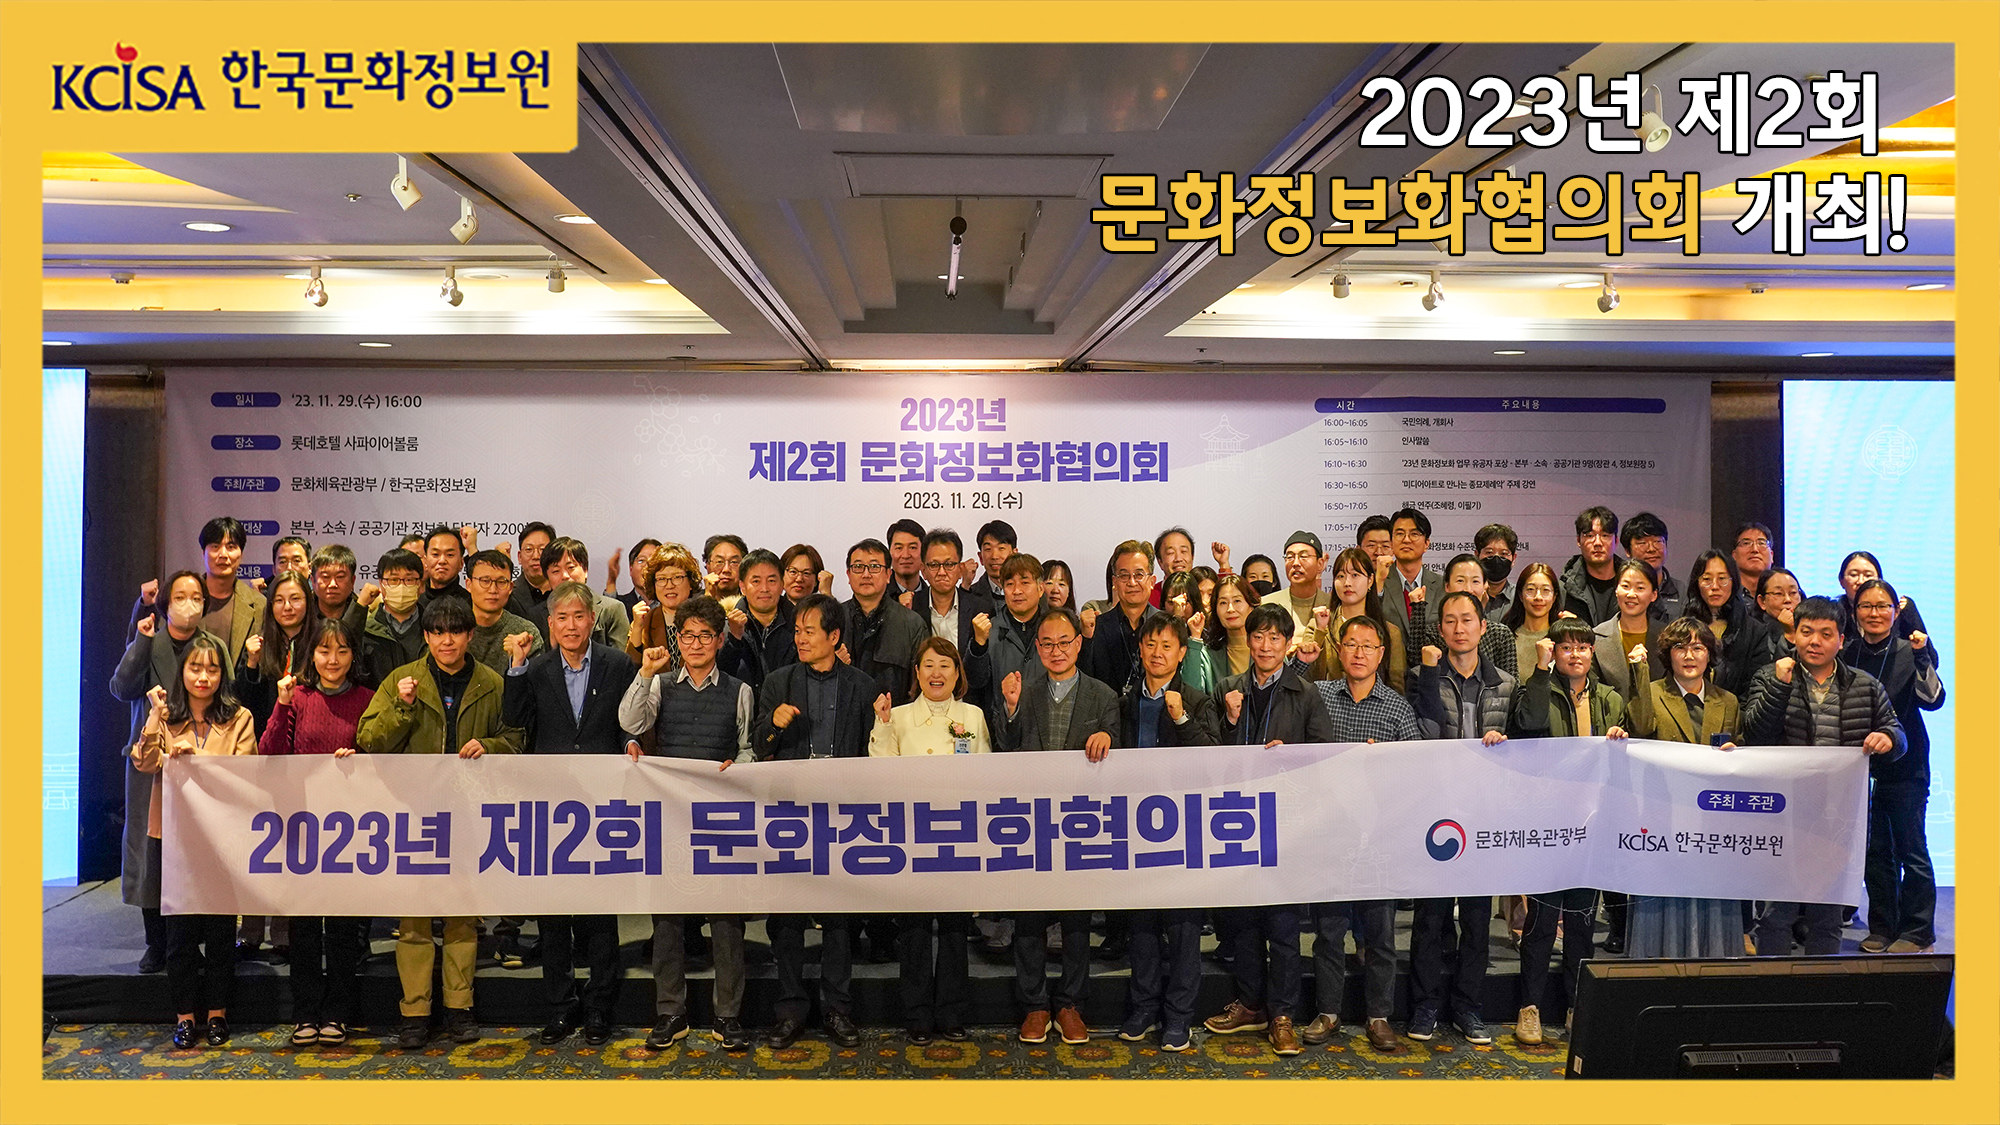 2023년 제2회 문화정보화협의회 개최!